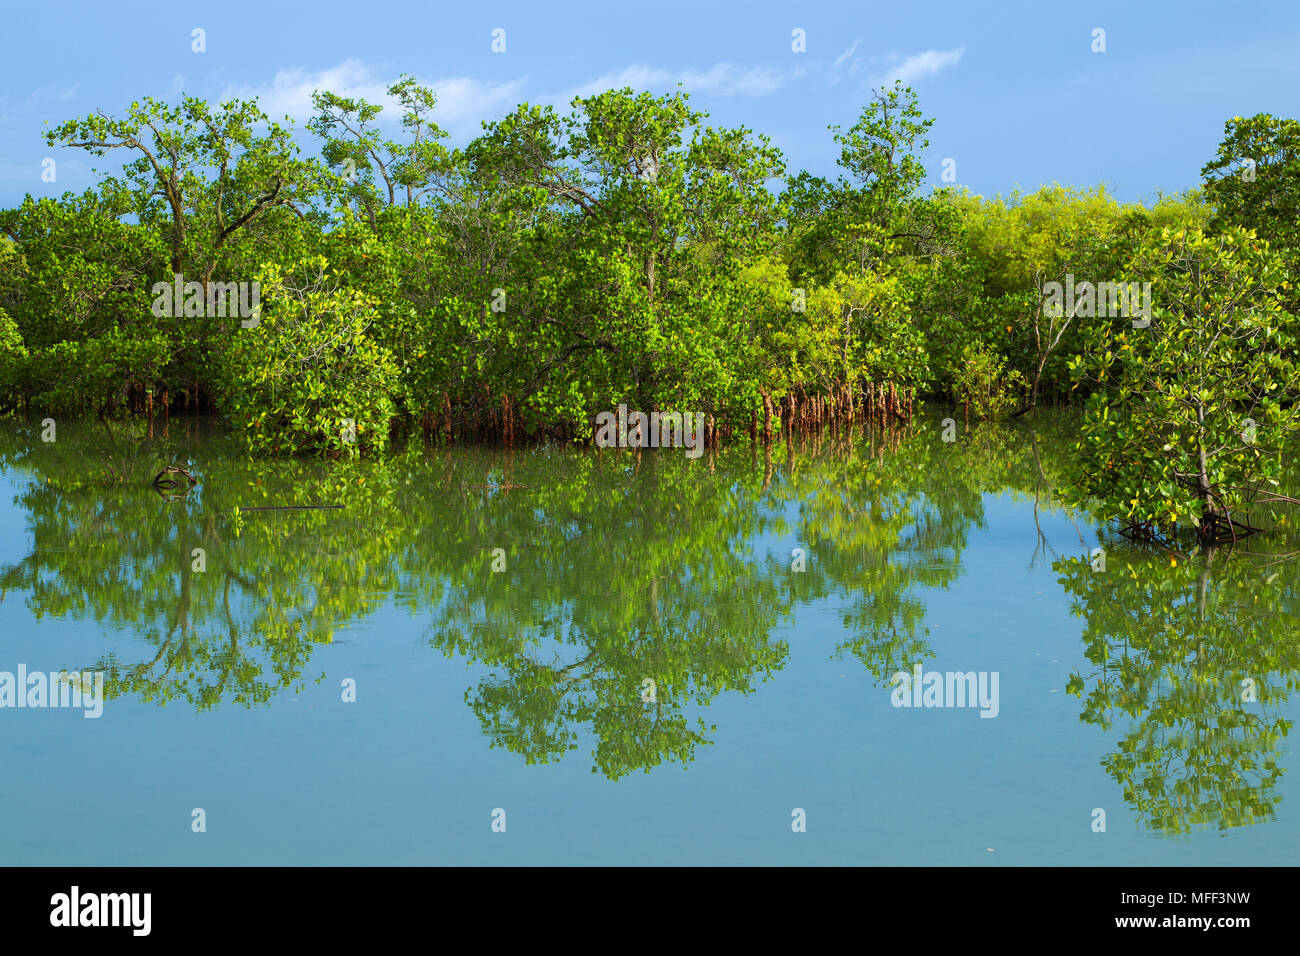 Les mangroves sont différentes sortes d'arbres jusqu'à moyenne et d'arbustes qui poussent dans des habitats sédimentaires côtières salées dans les zones tropicales et subtropicales, Mahe, Banque D'Images